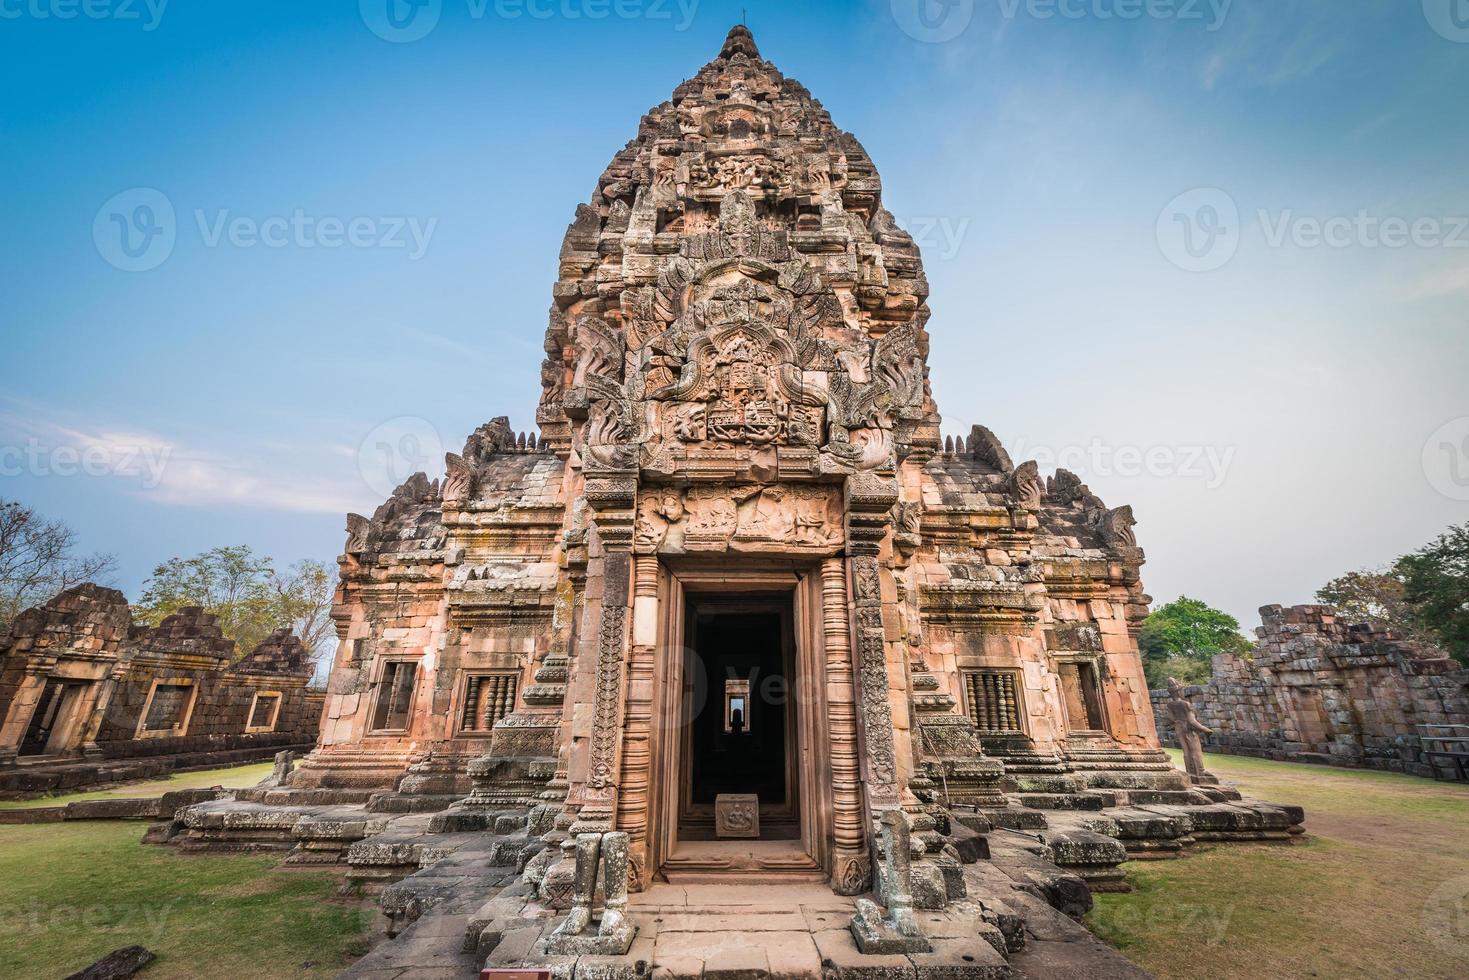 Phanom ha suonato il parco storico del castello in Tailandia foto